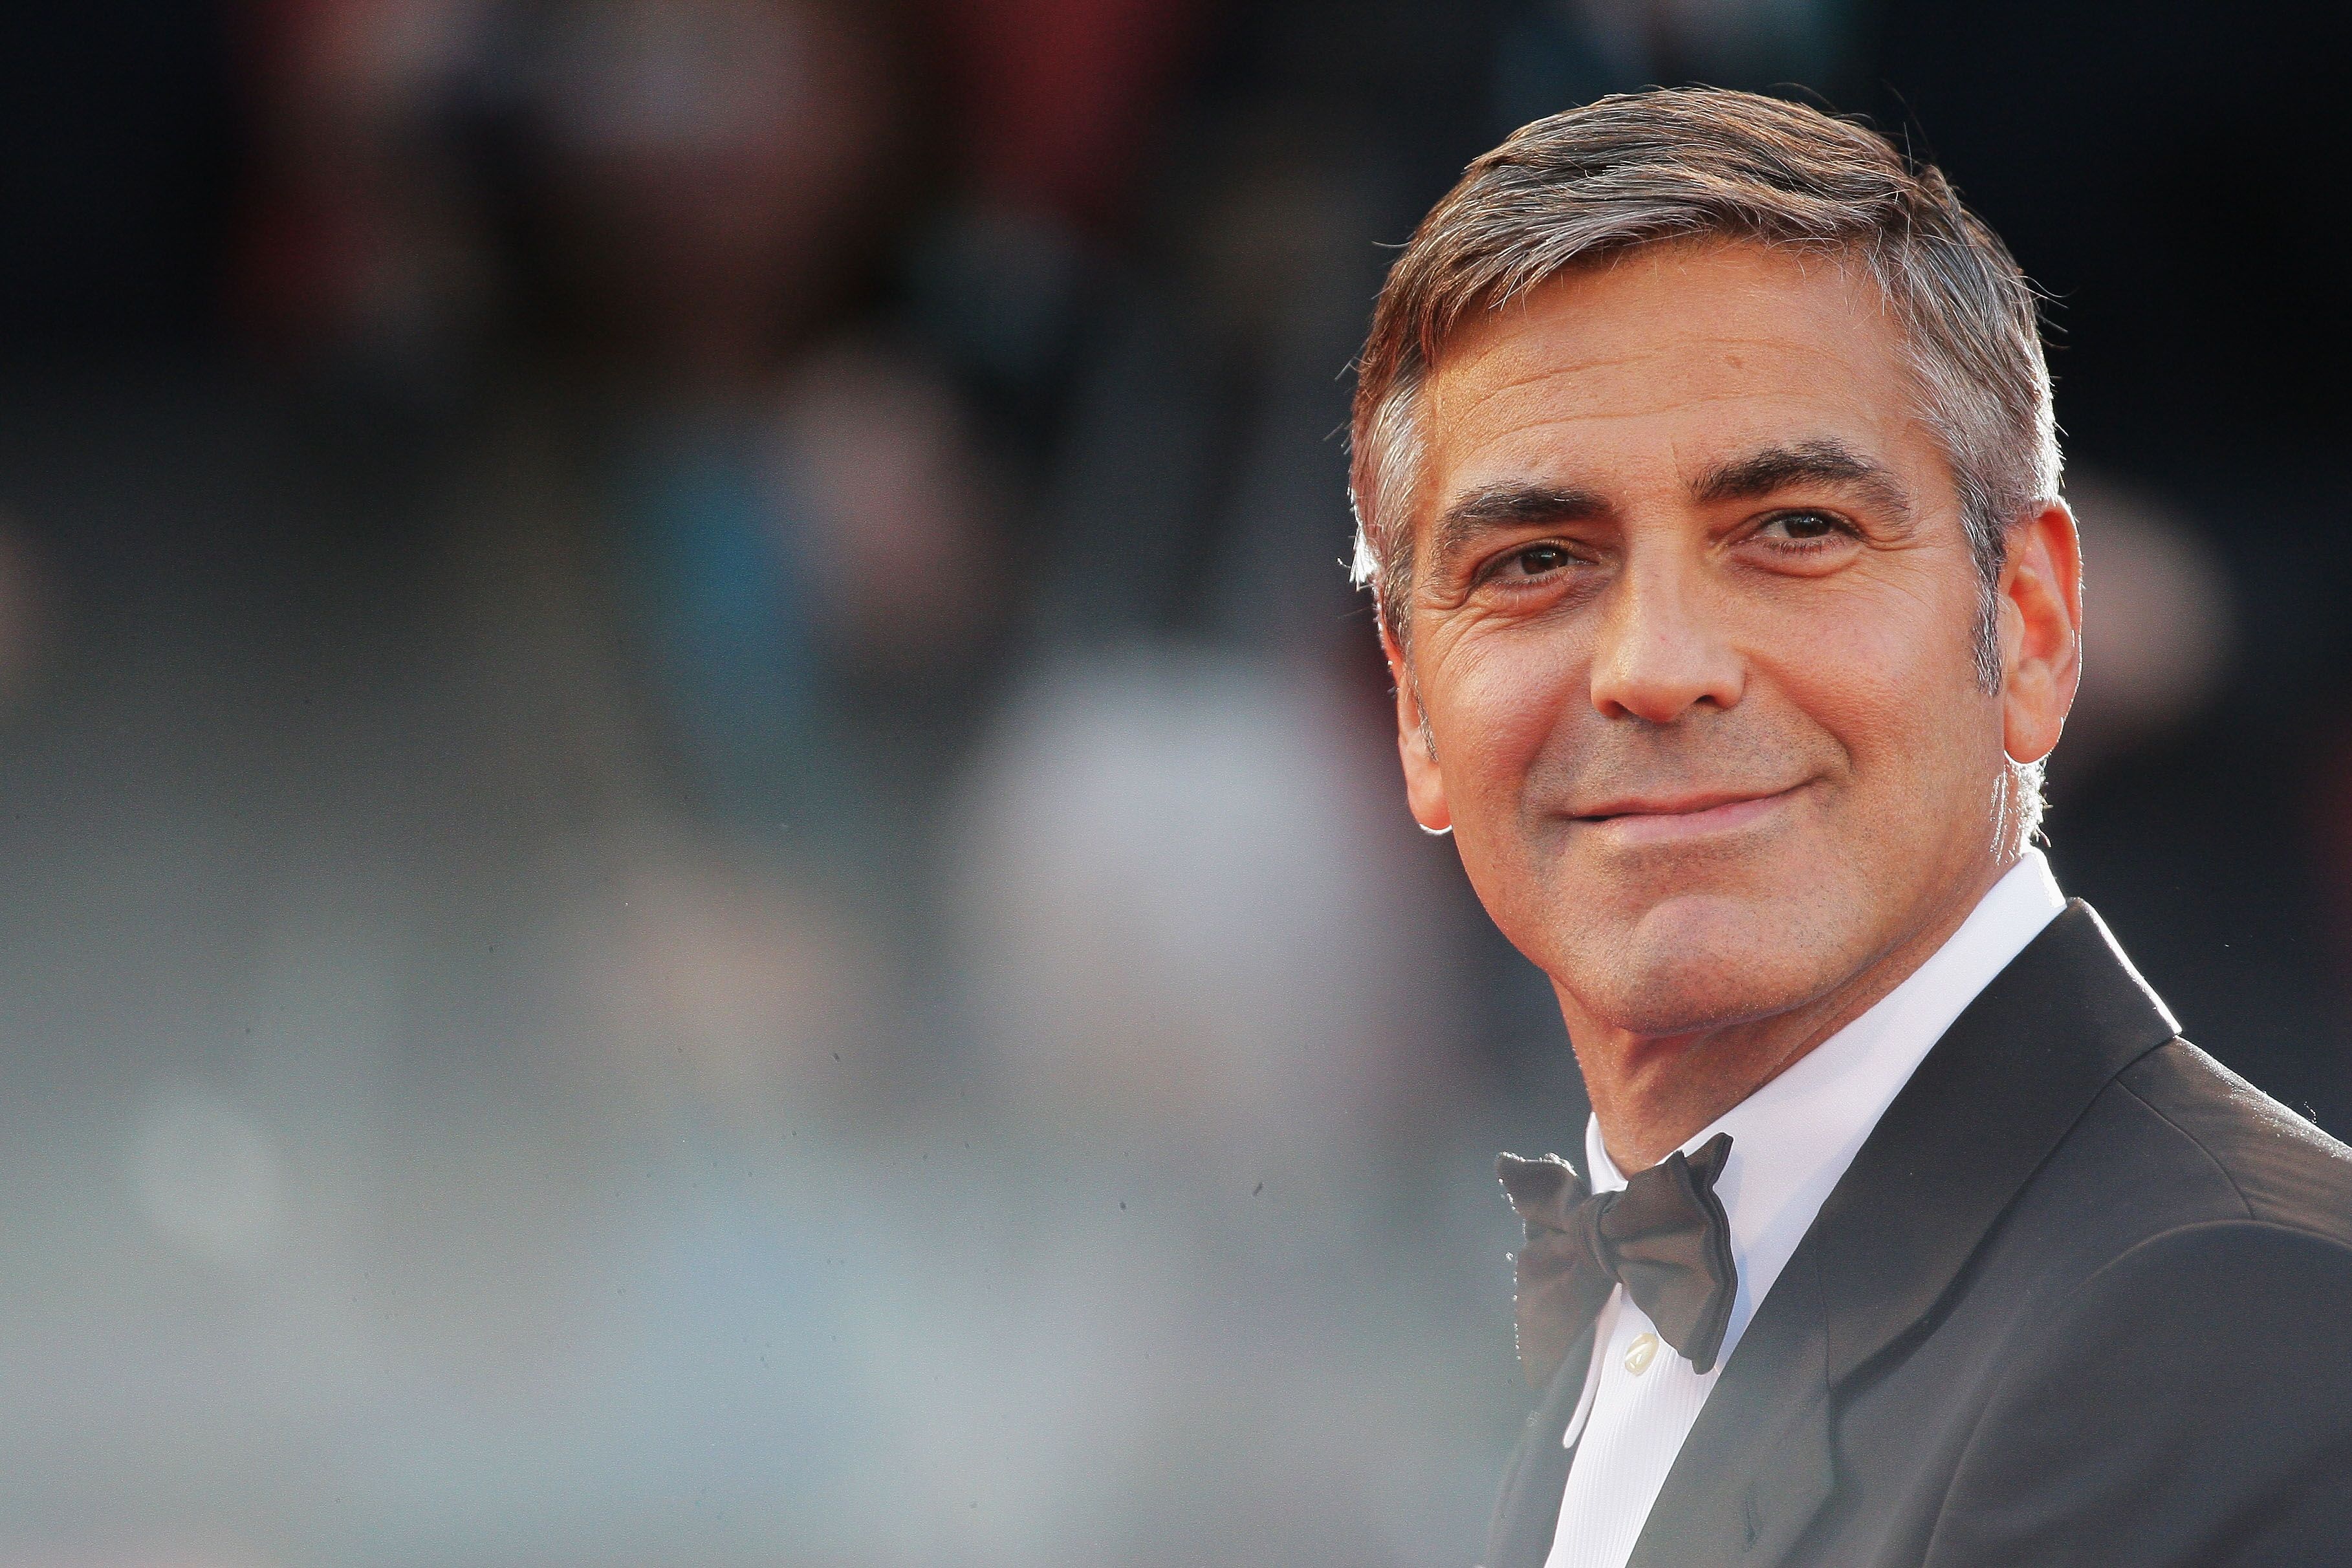 George Clooney bei der Premiere von "The Men Who Stare At Goats" in der Sala Grande während der 66. Filmfestspiele von Venedig 2009 | Quelle:  Getty Images